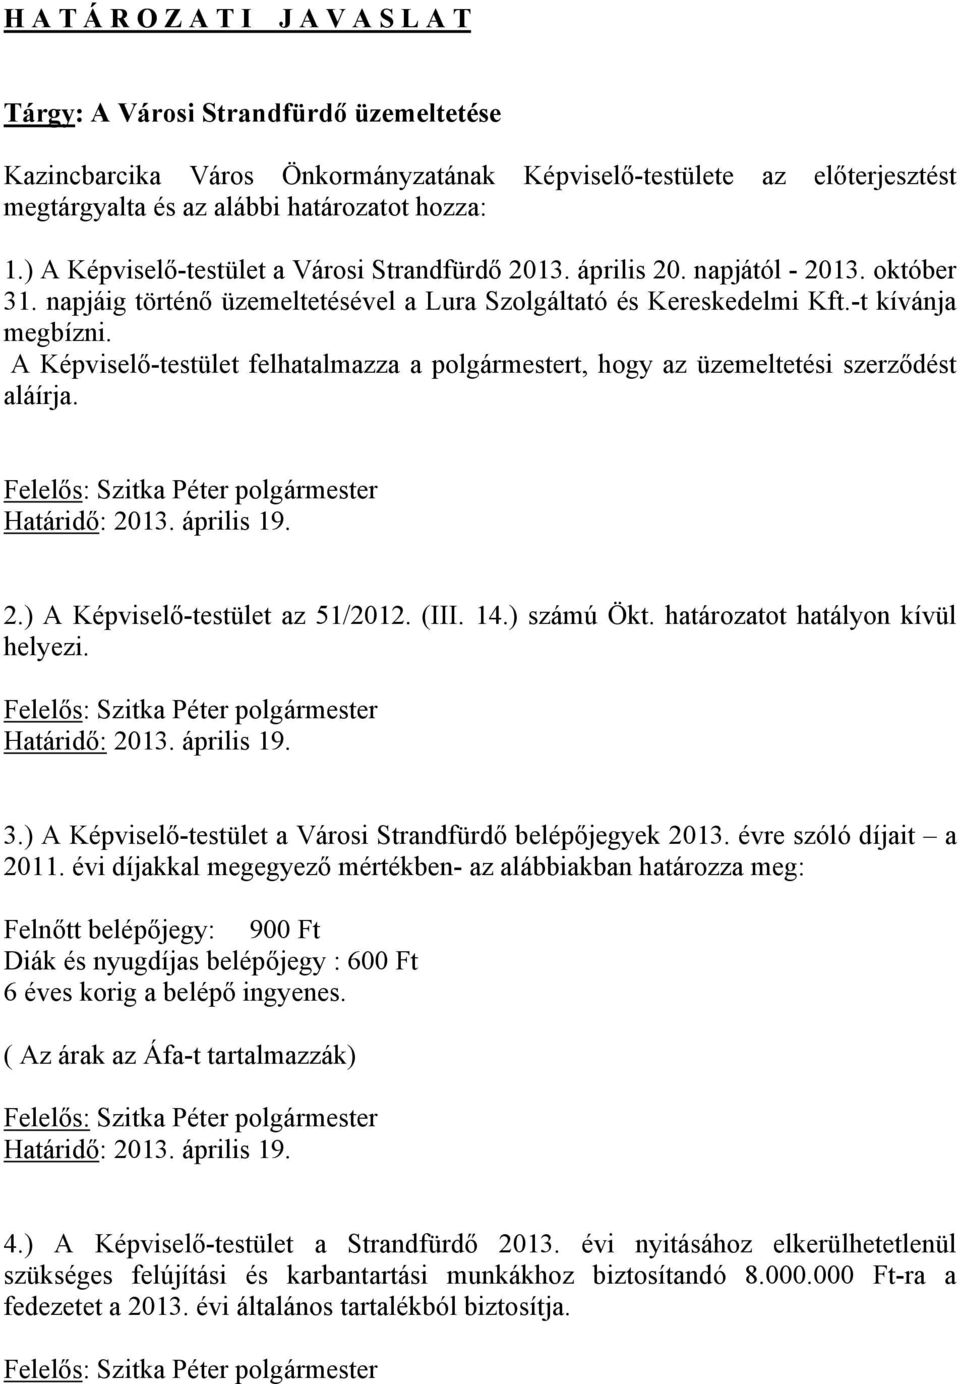 A Képviselő-testület felhatalmazza a polgármestert, hogy az üzemeltetési szerződést aláírja. Felelős: Szitka Péter polgármester Határidő: 2013. április 19. 2.) A Képviselő-testület az 51/2012. (III.